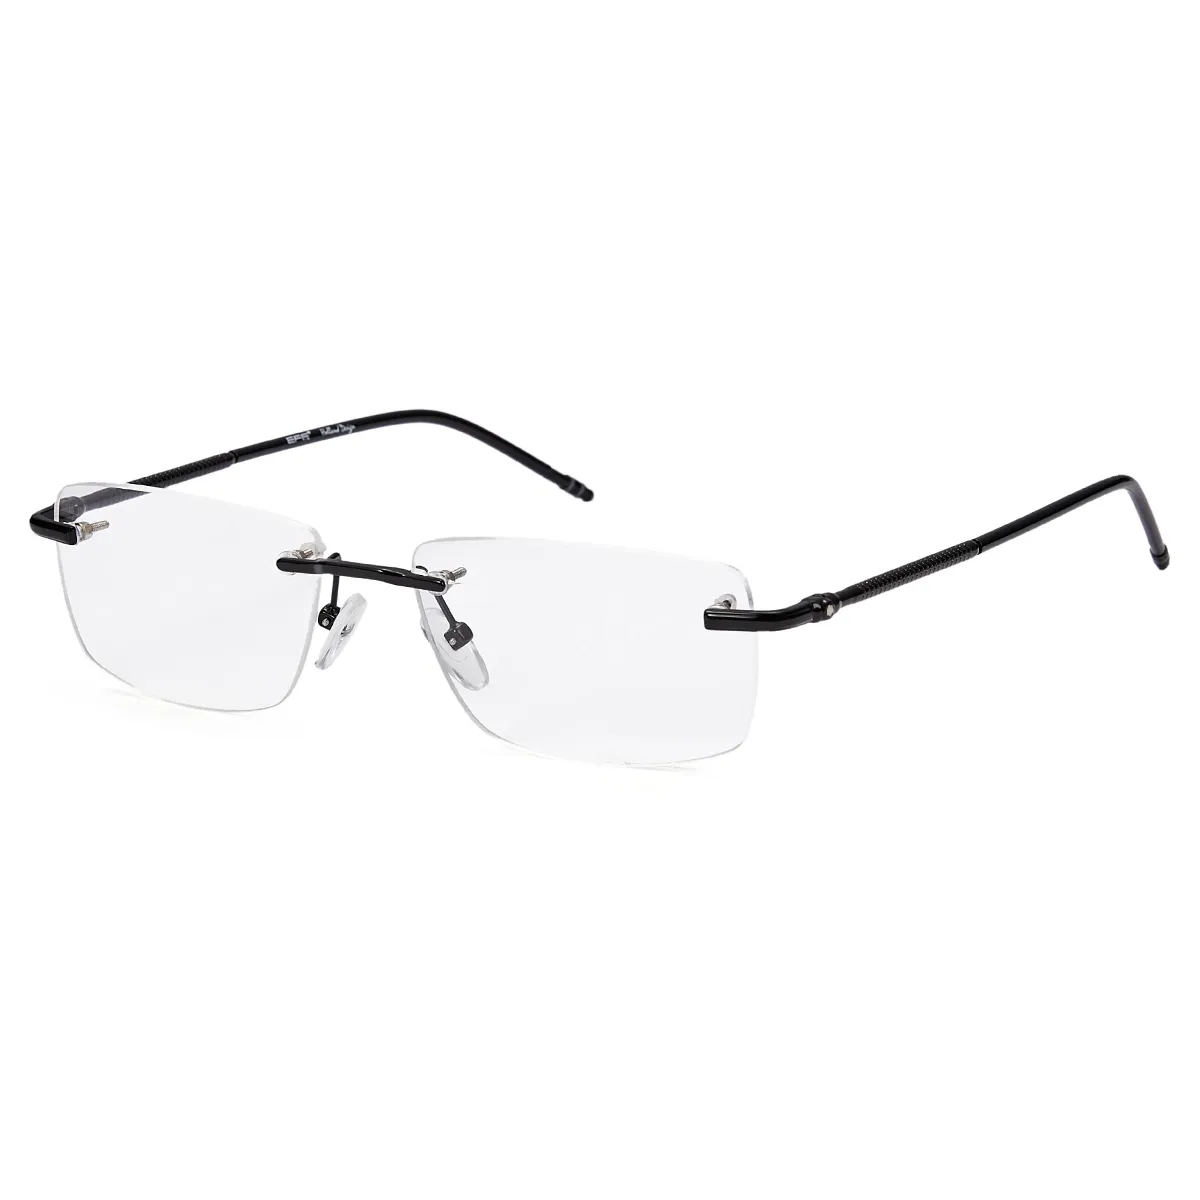 Greene - Rectangle Black Glasses for Men